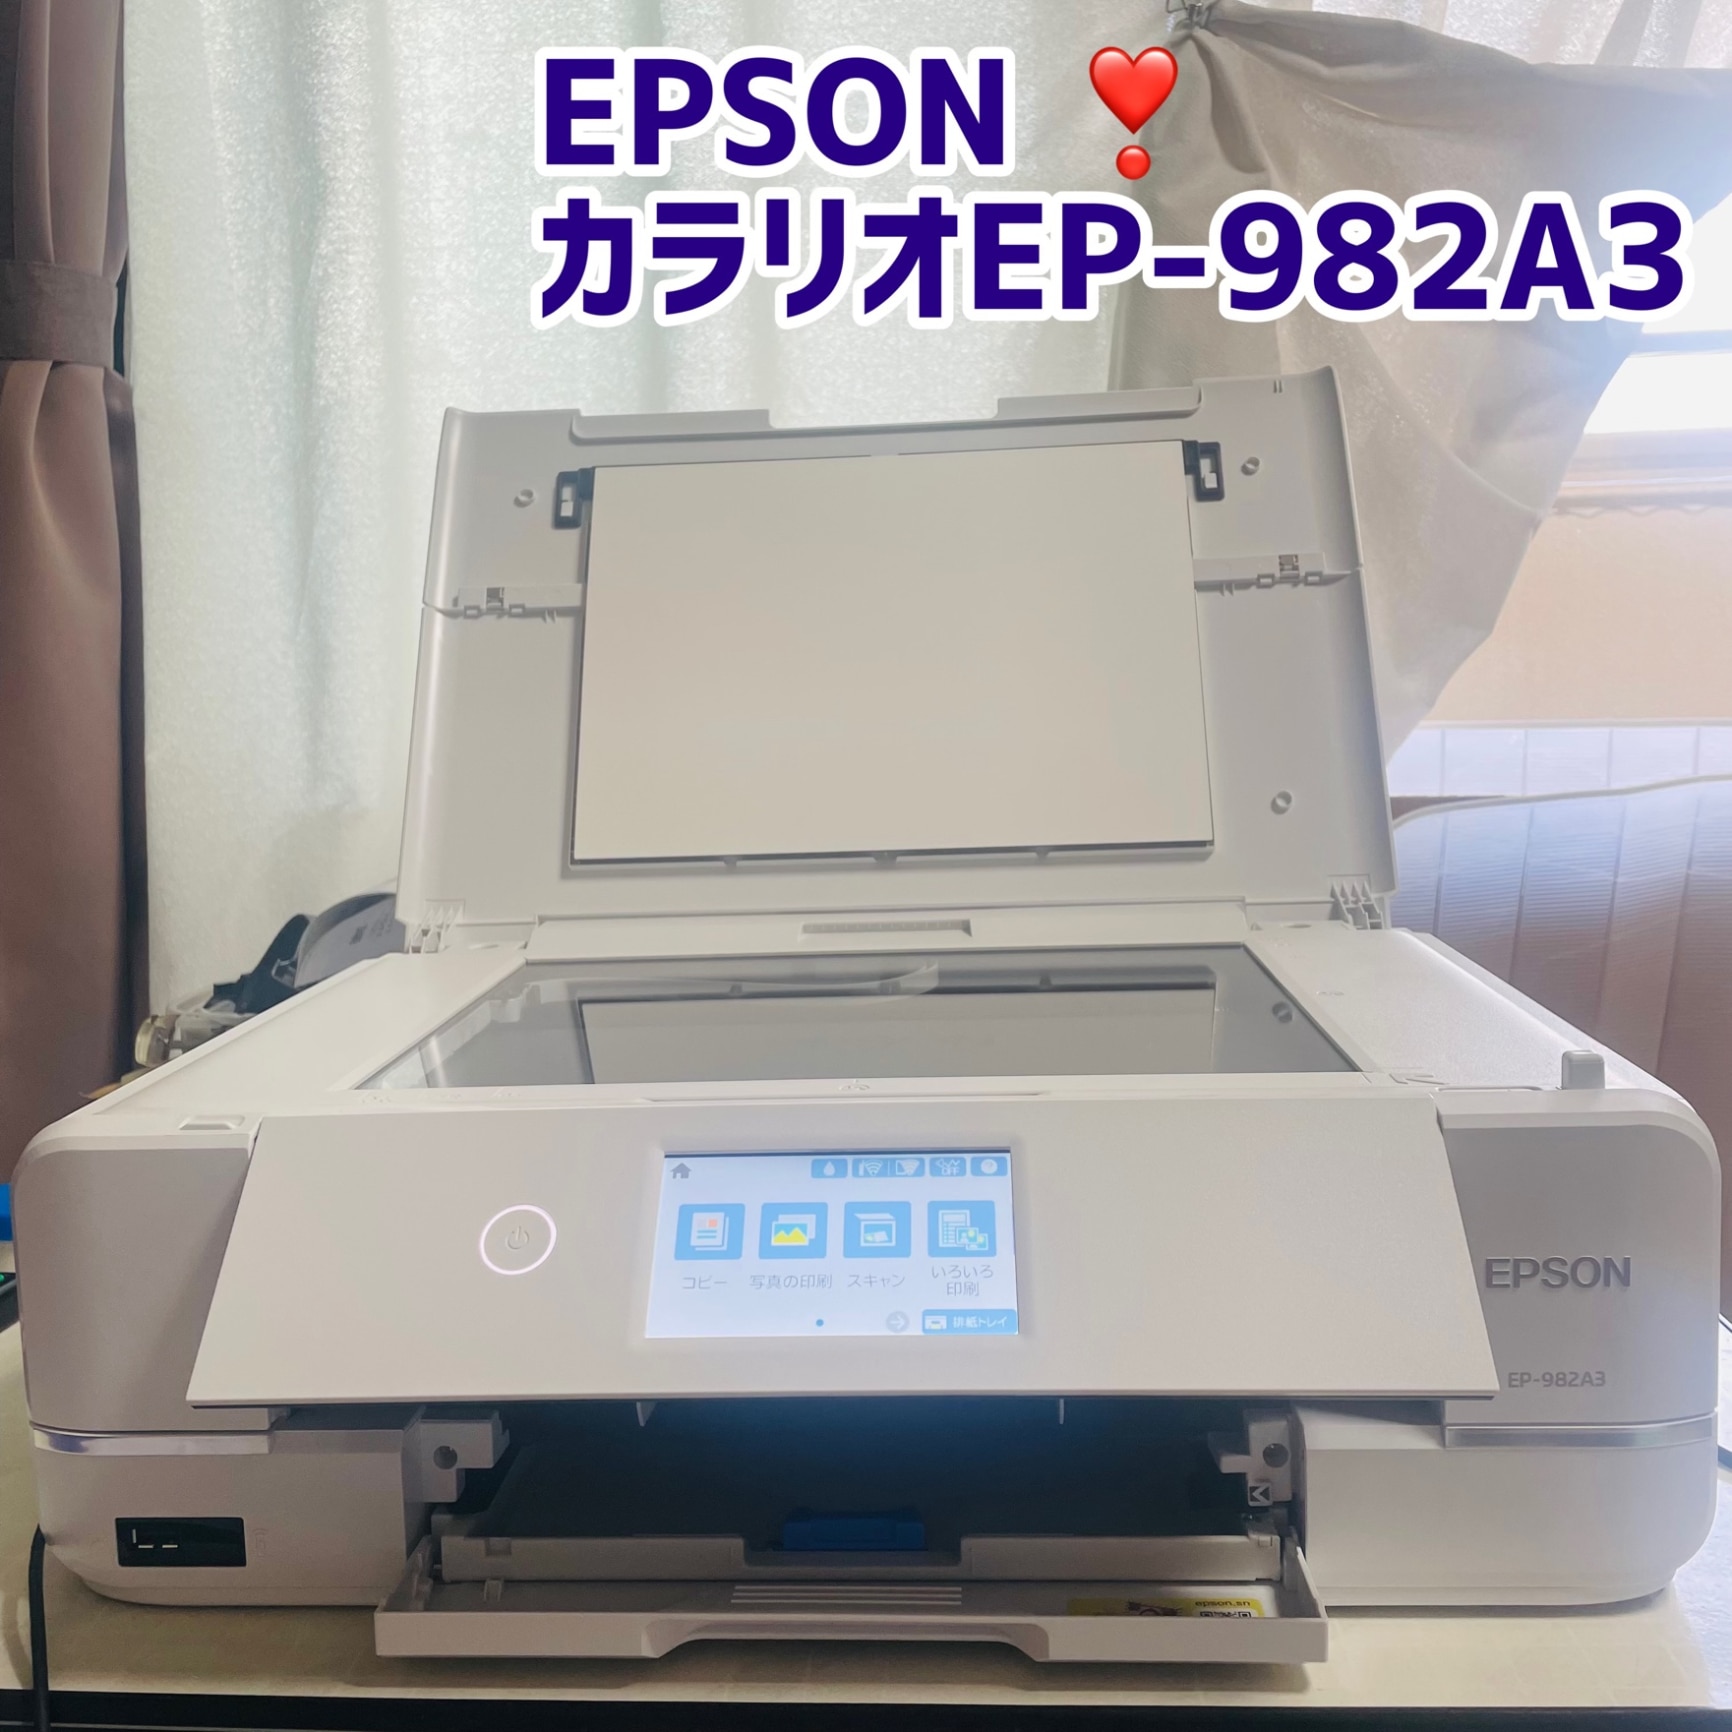 エプソン EPSON カラリオ A3インクジェット複合機 EP-982A3 無線LAN